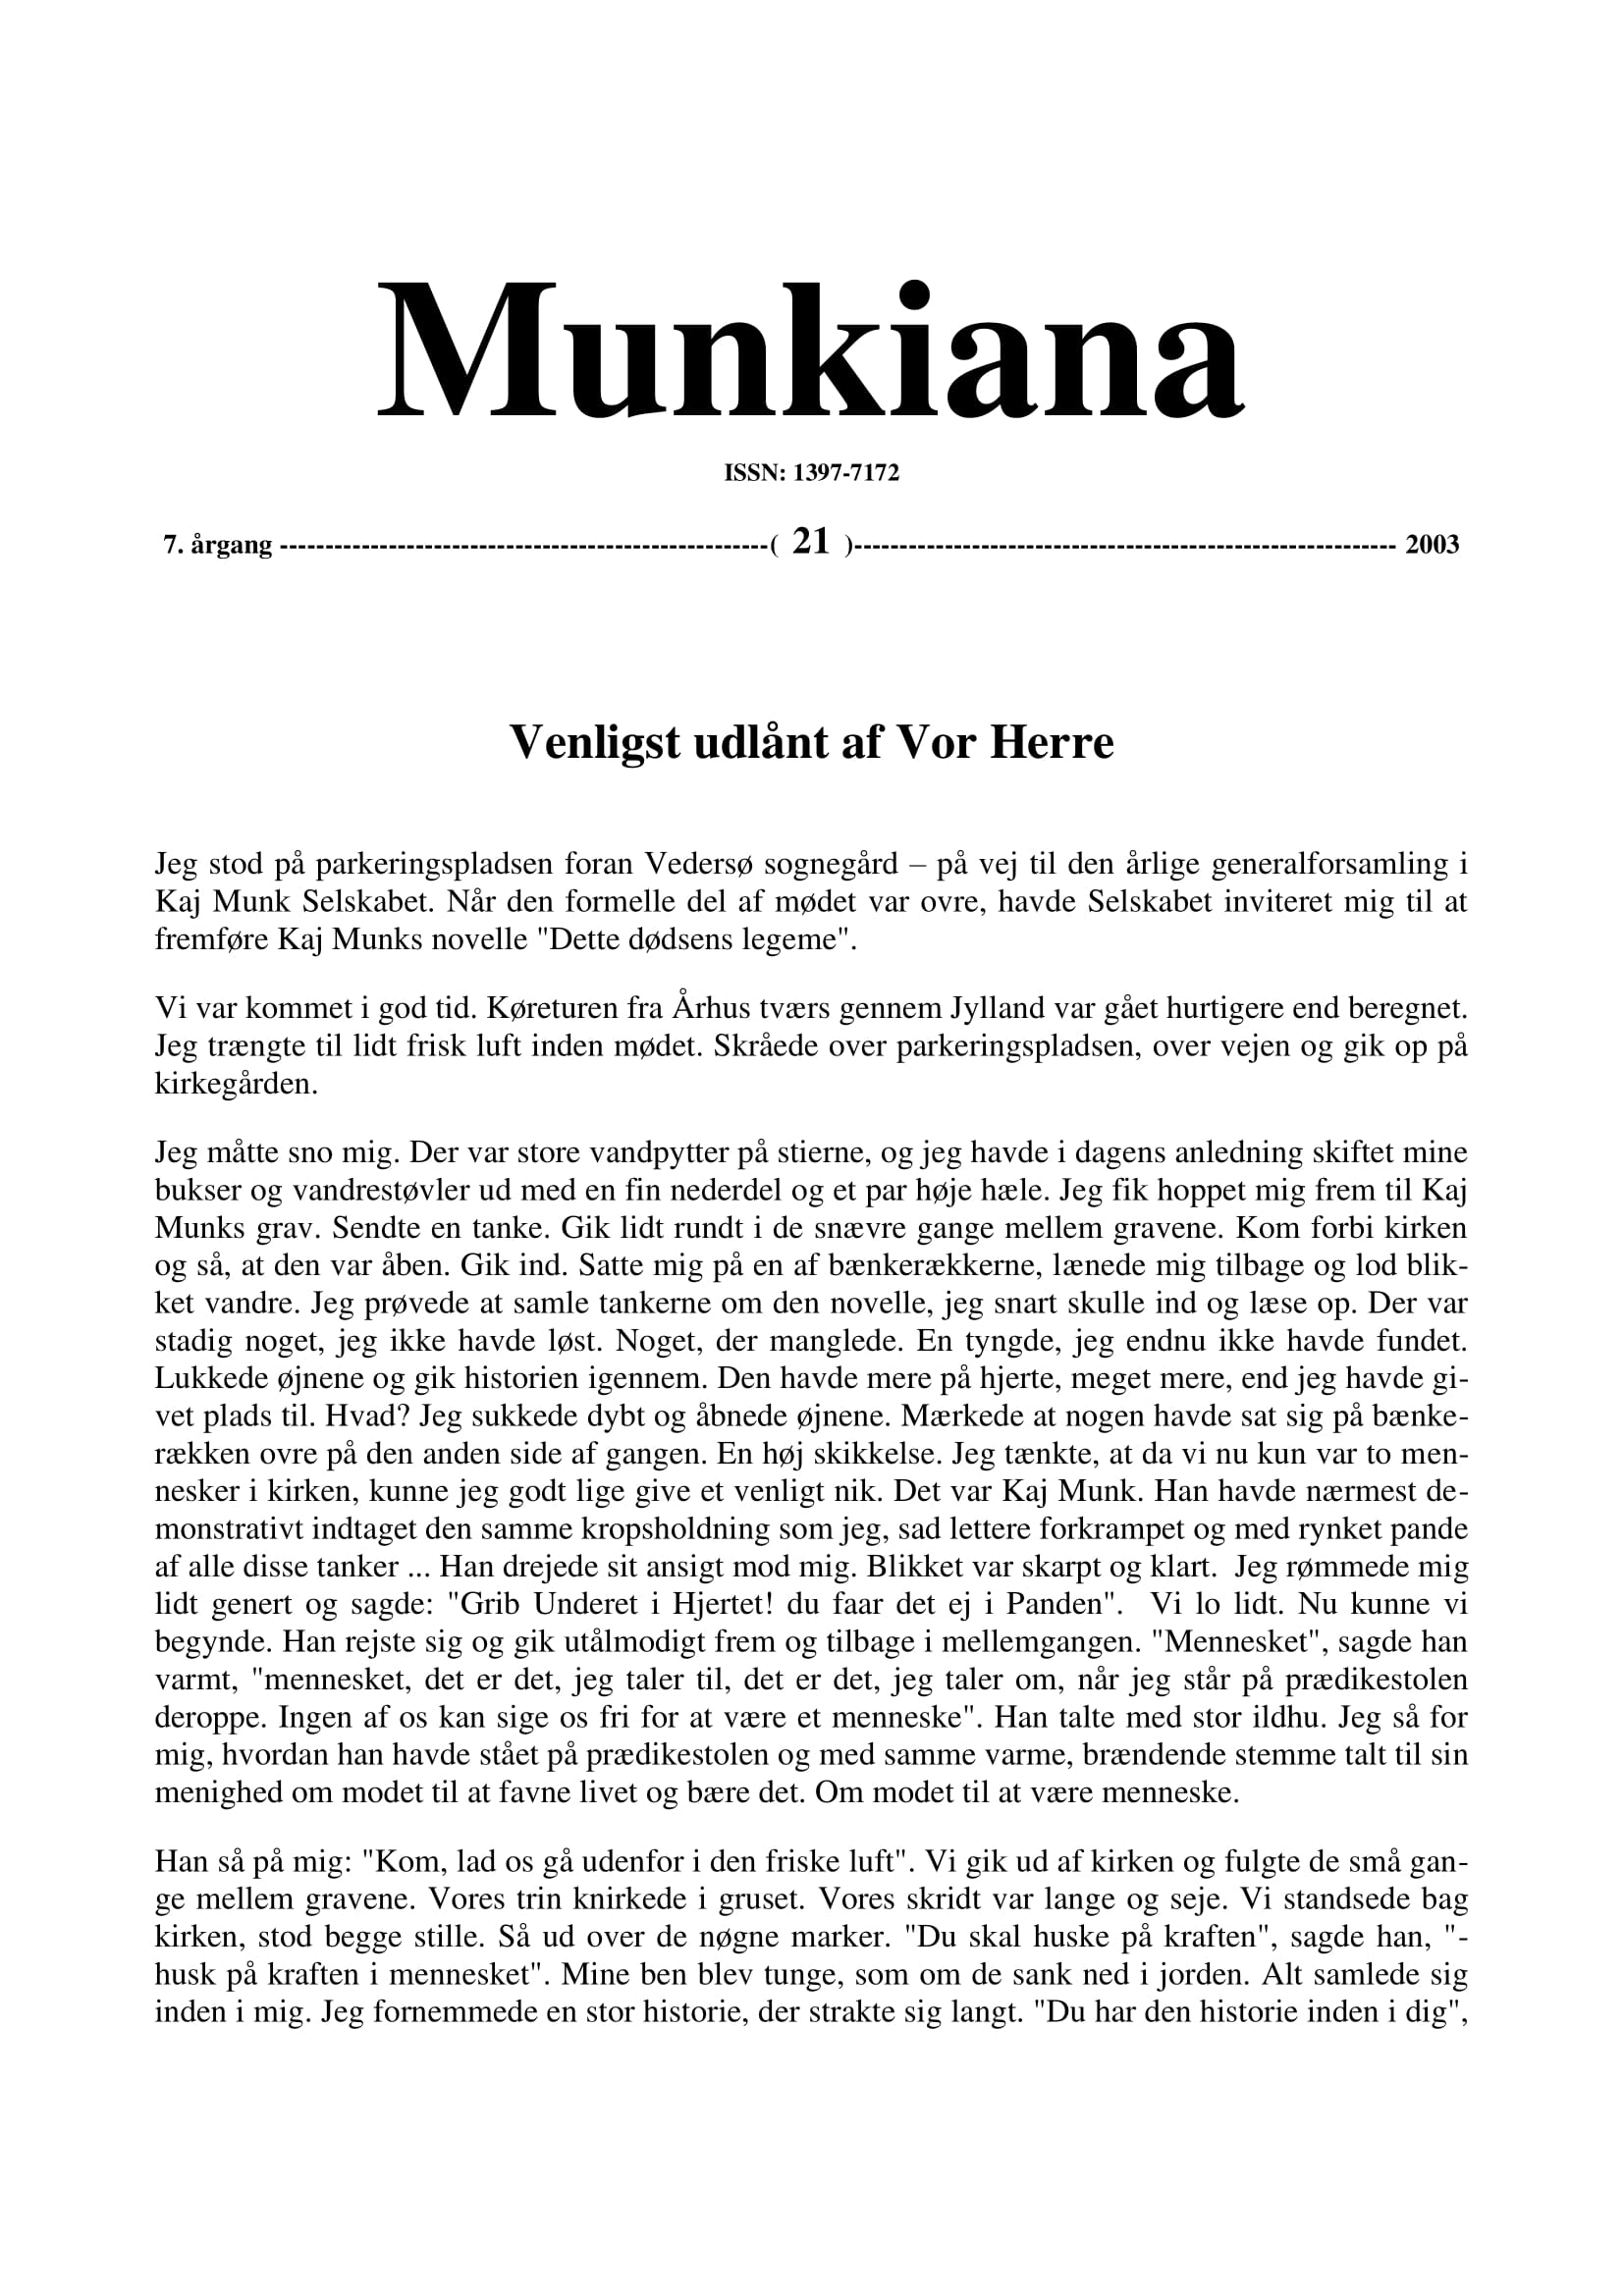 Klik på billedet for at downloade PDF med Munkiana nr. 36